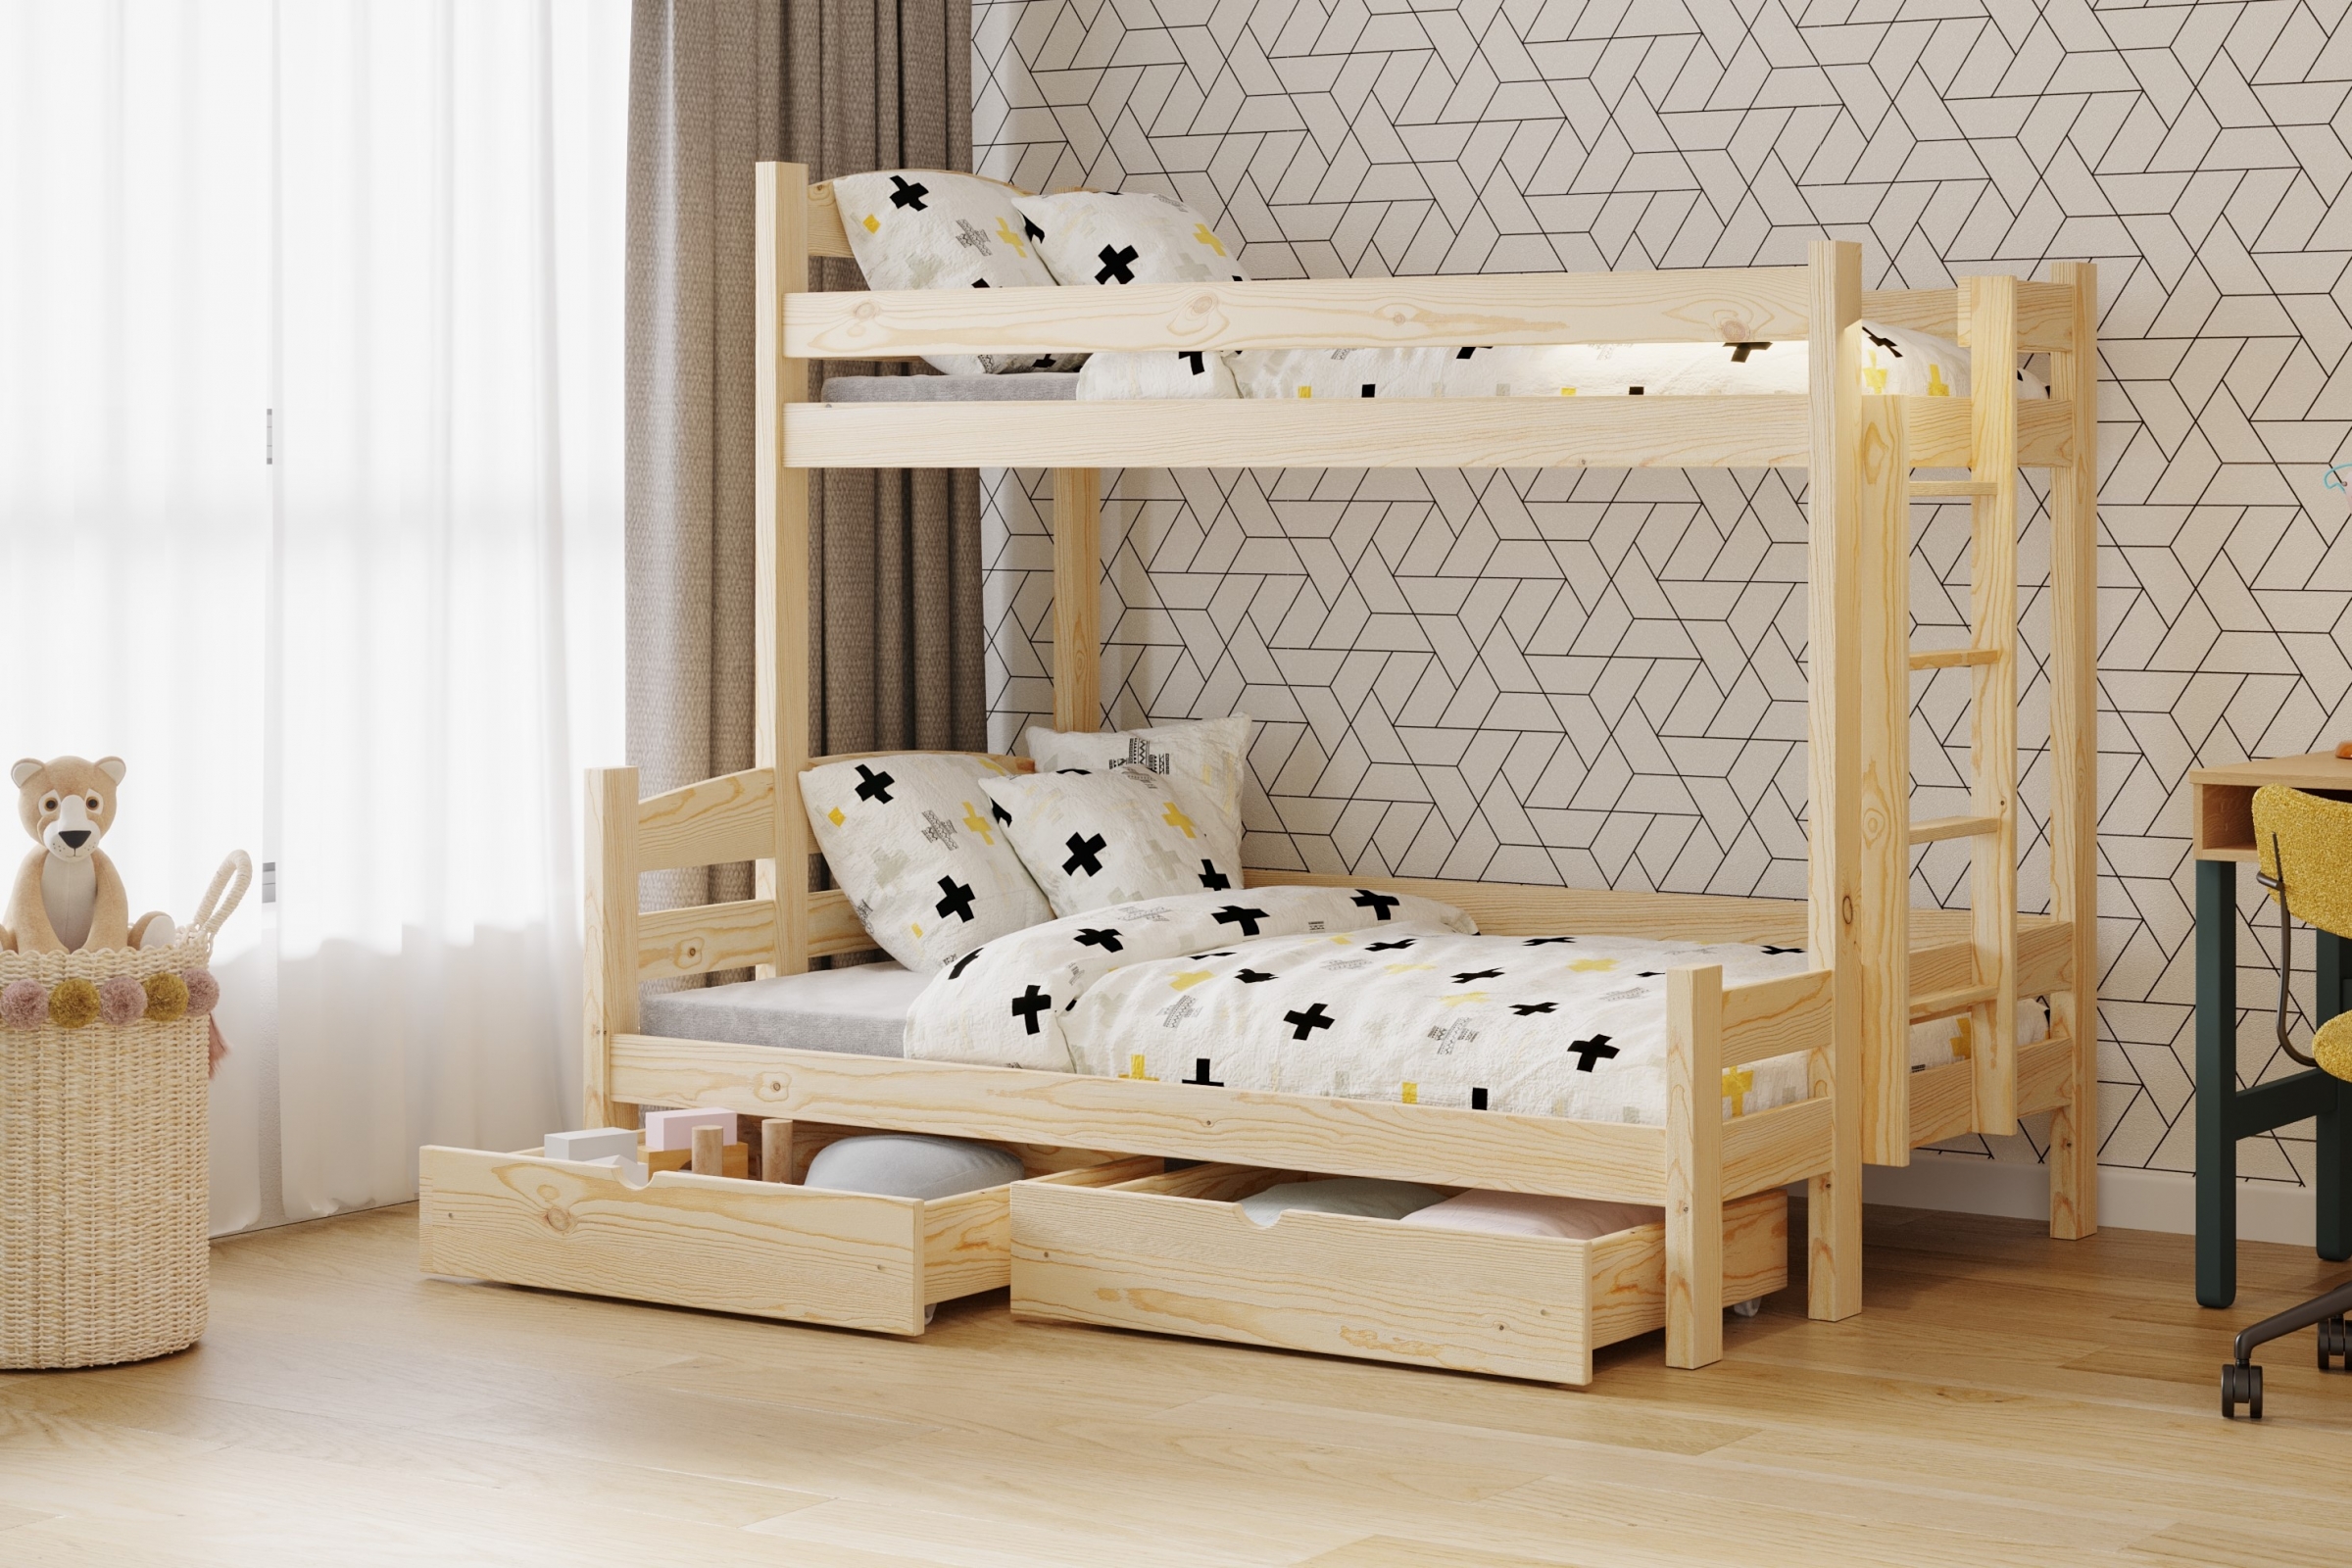 Lovic emeletes ágy, fiókokkal, jobb oldali - 80x200 cm/120x200 cm - fenyőfa Emeletes ágy fiokokkal Lovic - fenyőfa - aranzacja